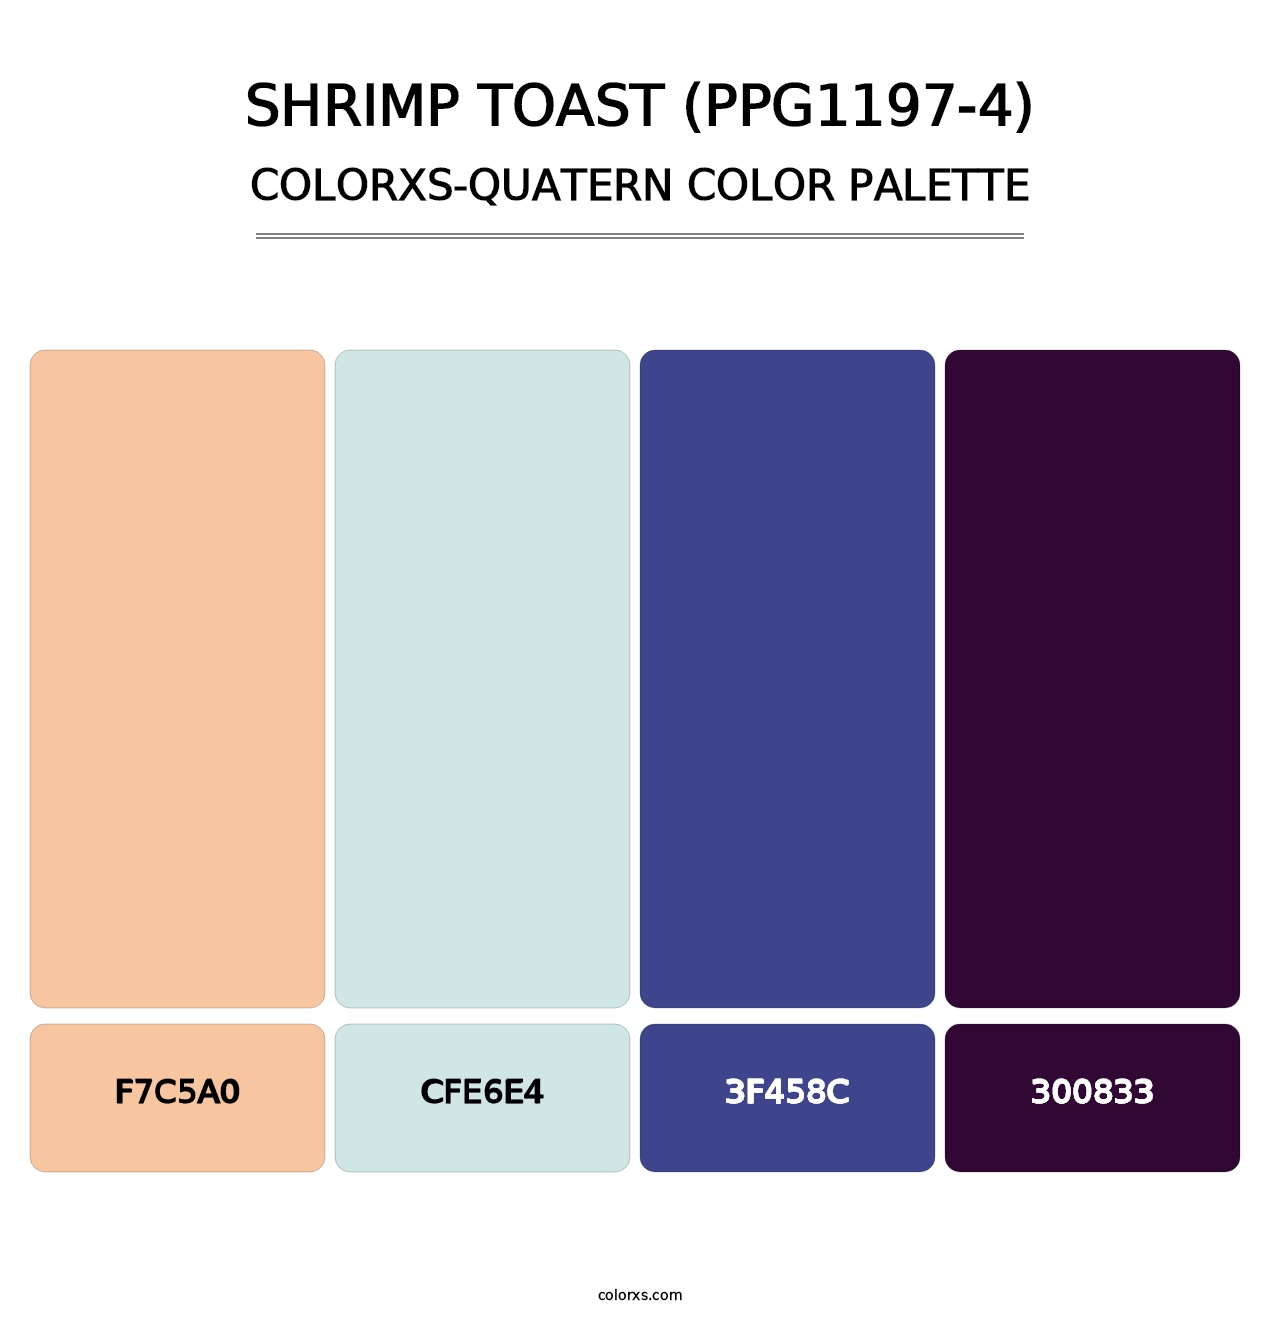 Shrimp Toast (PPG1197-4) - Colorxs Quatern Palette